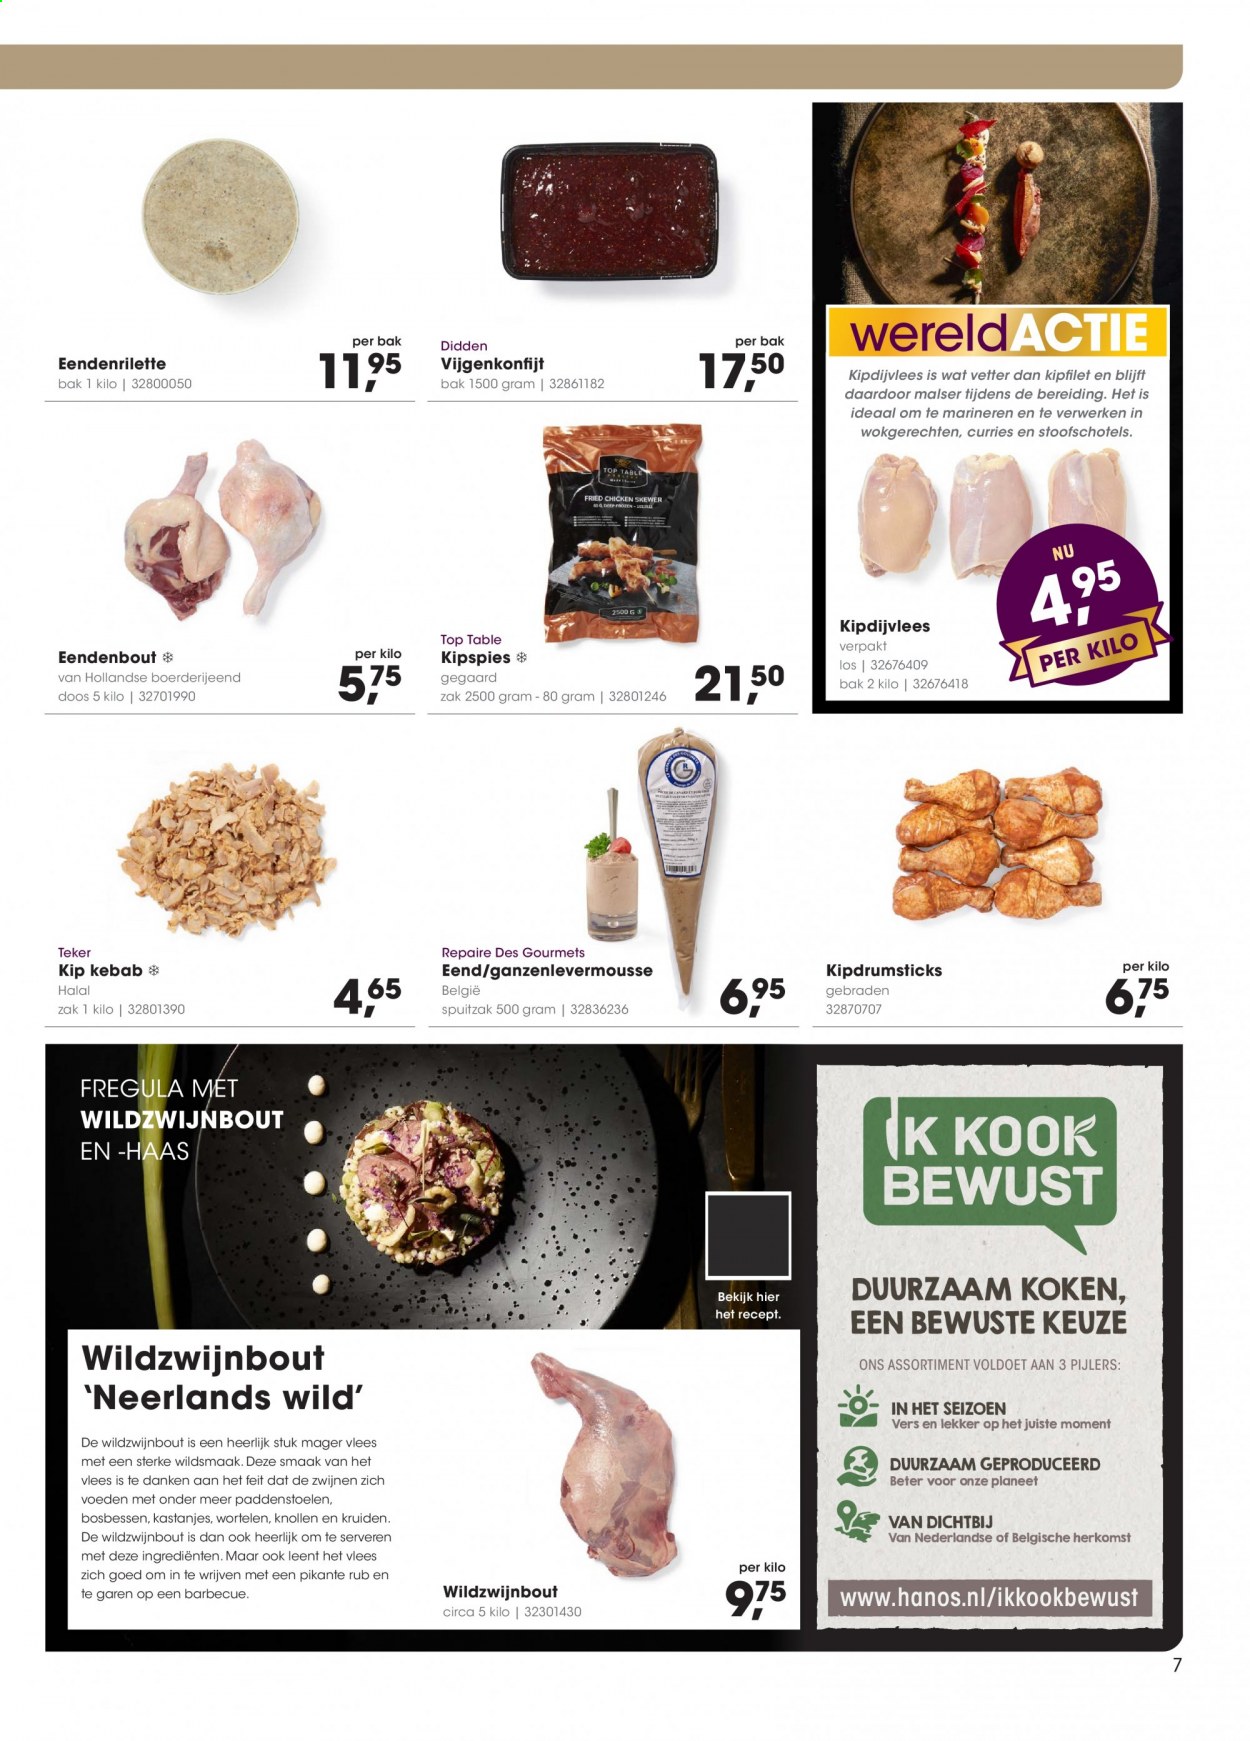 thumbnail - Hanos-aanbieding - 25-1-2021 - 7-2-2021 -  producten in de aanbieding - eendenbout, kipfilet, BBQ. Pagina 7.